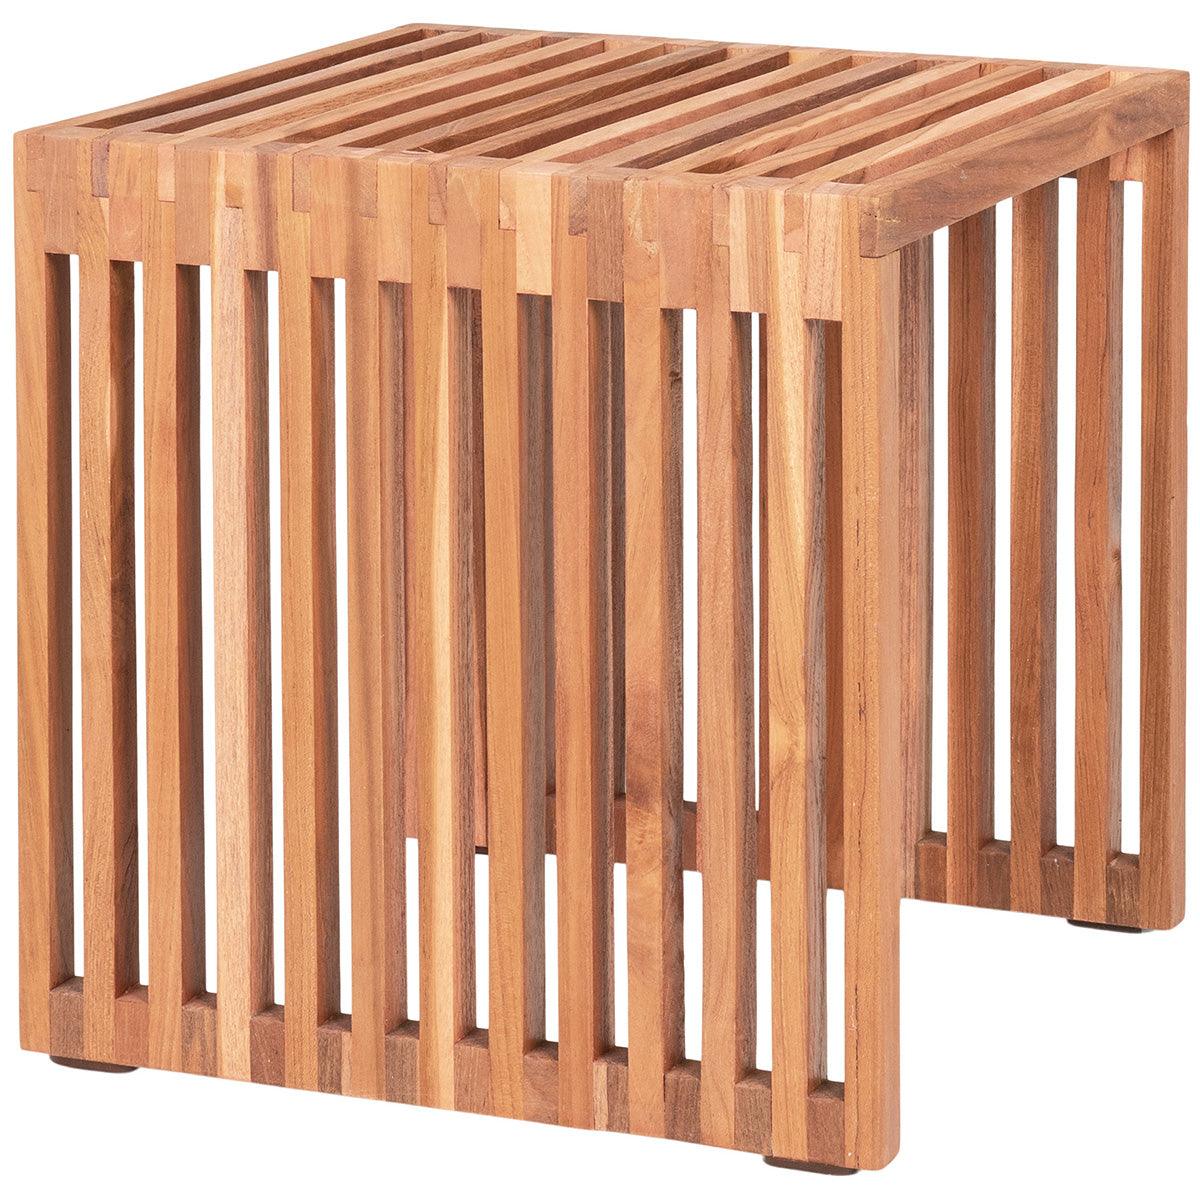 Pego Natural Teak Wood Side Table - WOO .Design